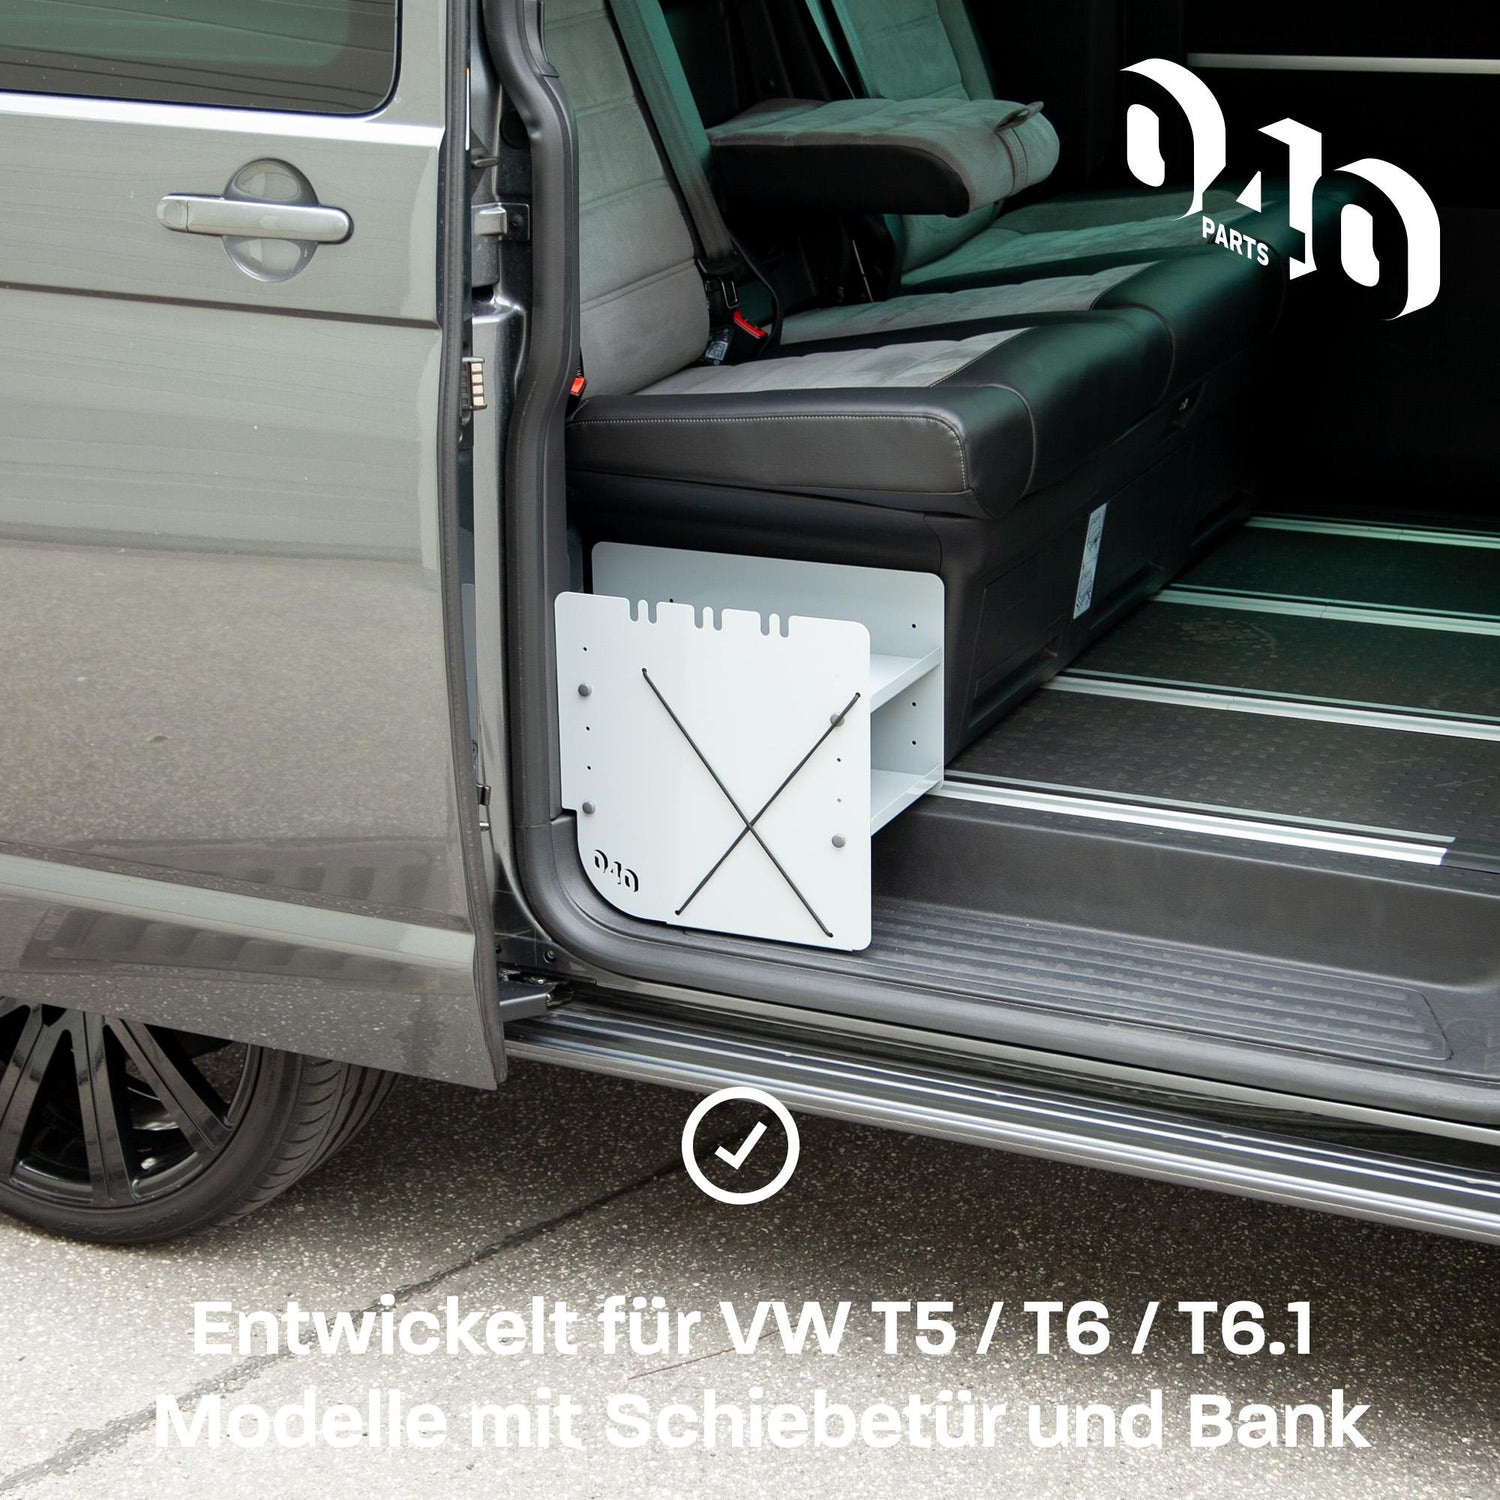 040parts Kühltruhenblech für VW T6.1 T6 T5 T4 California Einlegeboden –  Mixcover